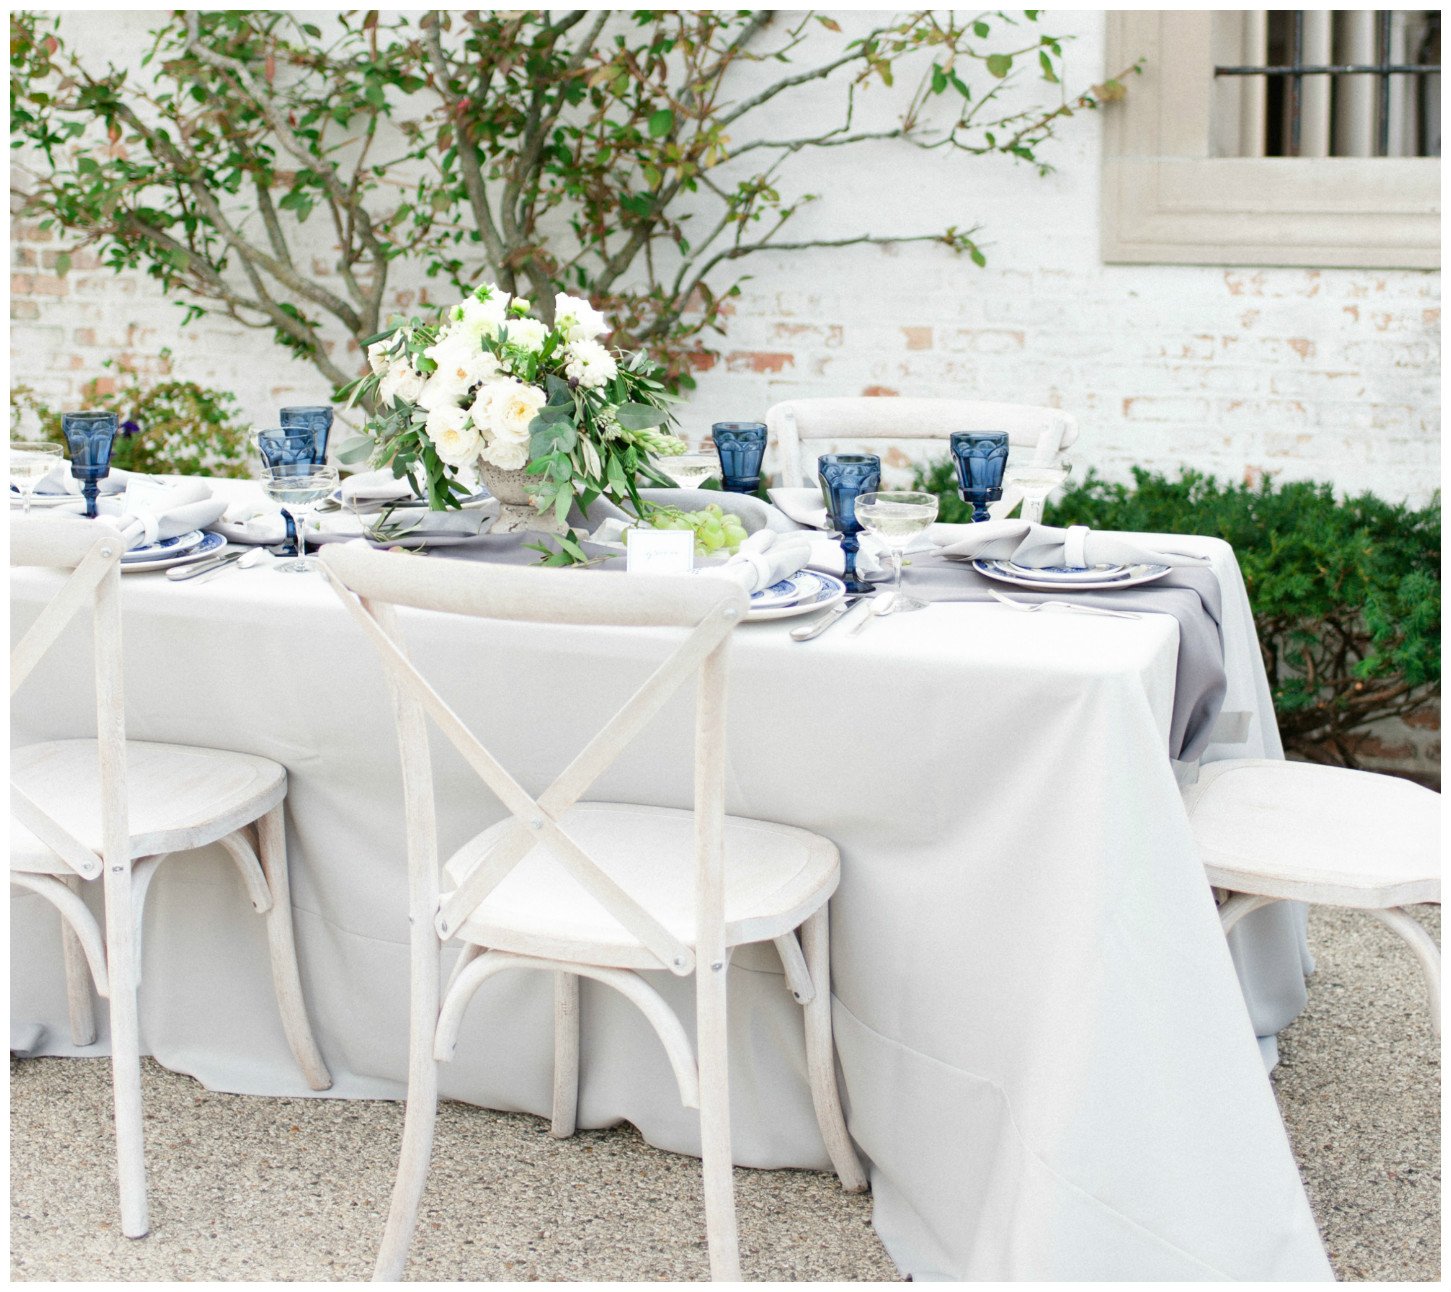 Silver Duet Table Linen with Indigo Glassware Wedding Decor | BBJ Linen